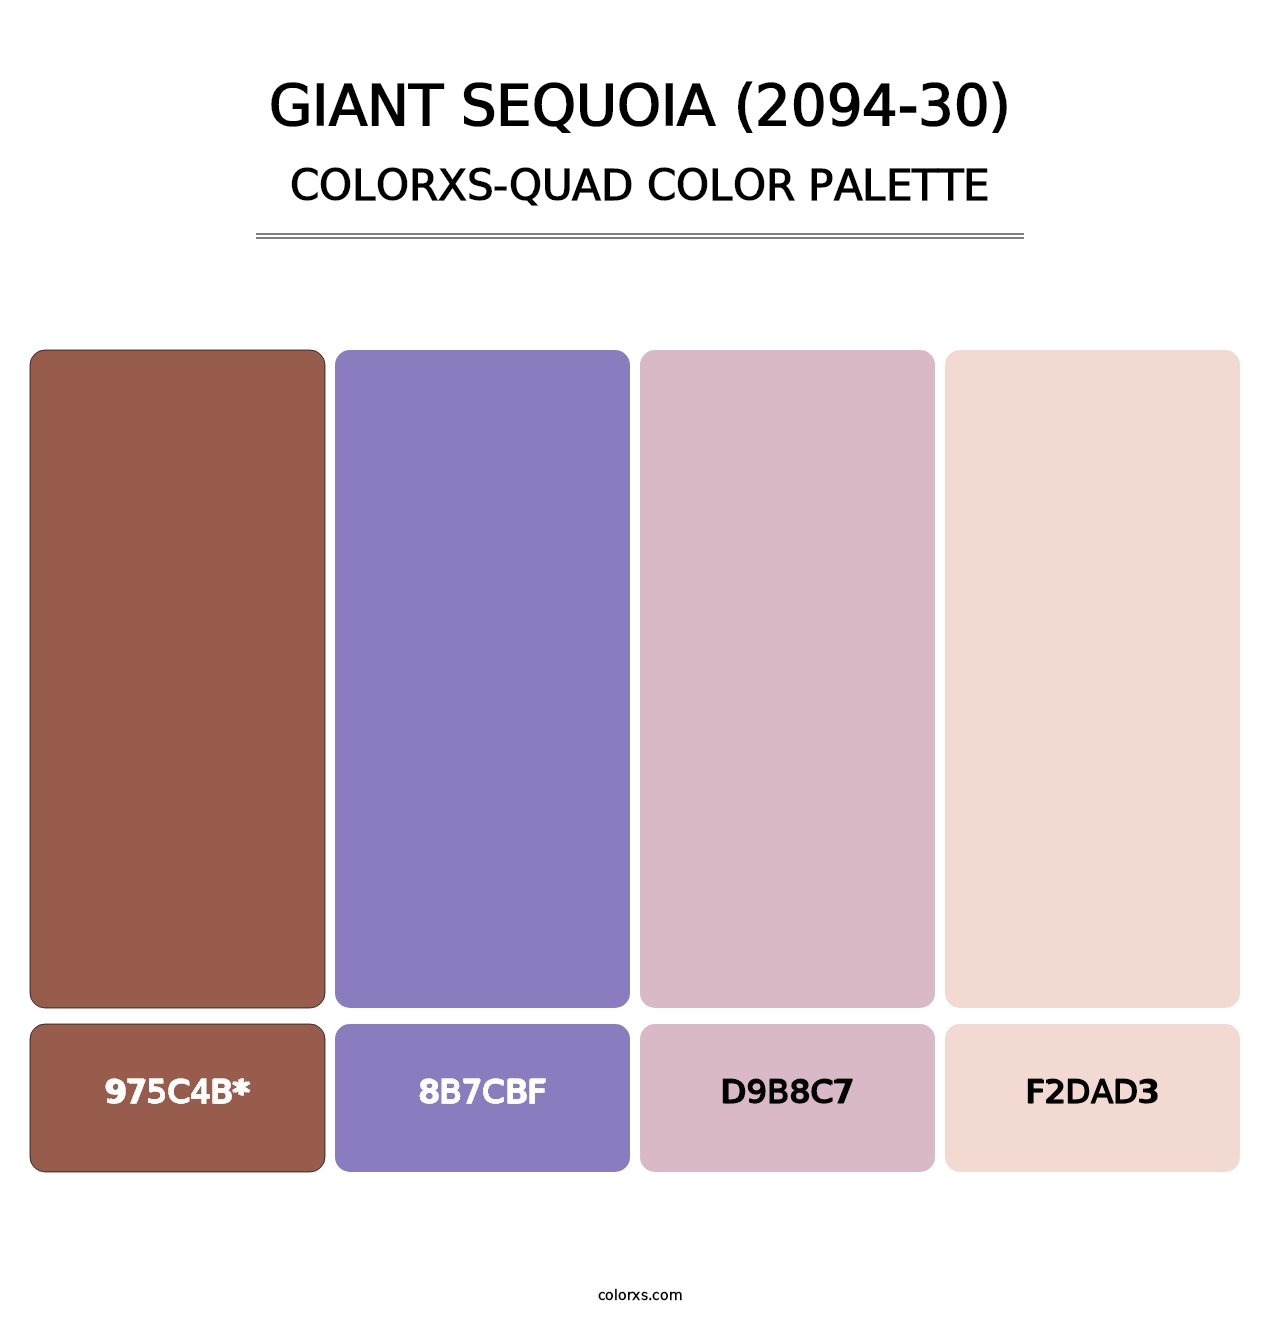 Giant Sequoia (2094-30) - Colorxs Quad Palette